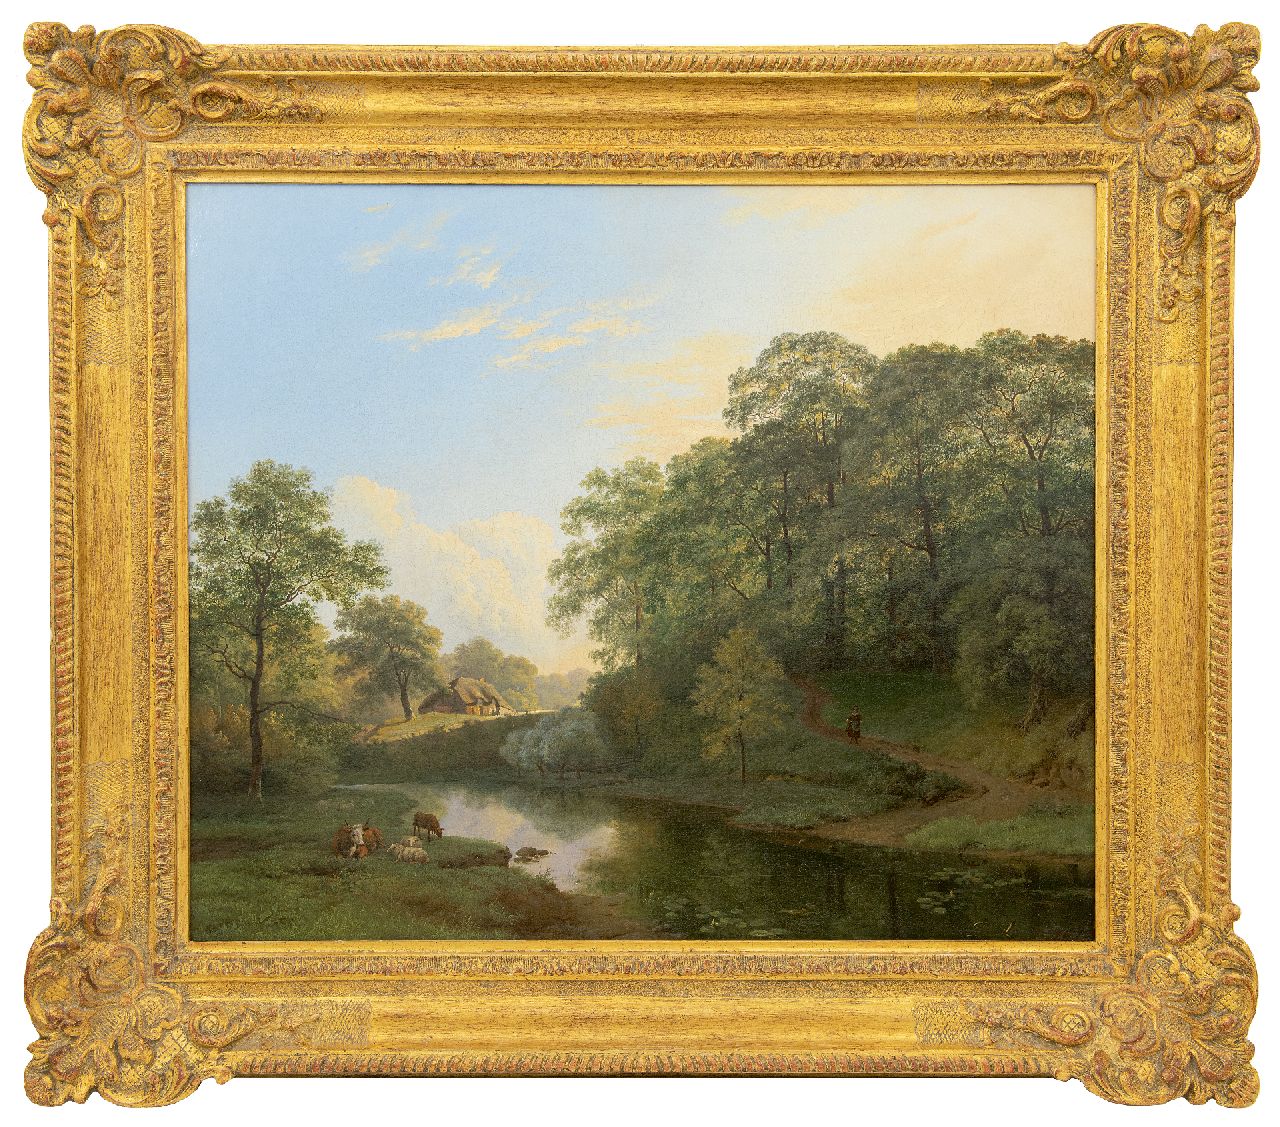 Bodeman W.  | Willem Bodeman, Gezicht op Beek met het Kastanjewoud, olieverf op doek 62,8 x 74,6 cm, gesigneerd rechtsonder met 'h p koekkoek'